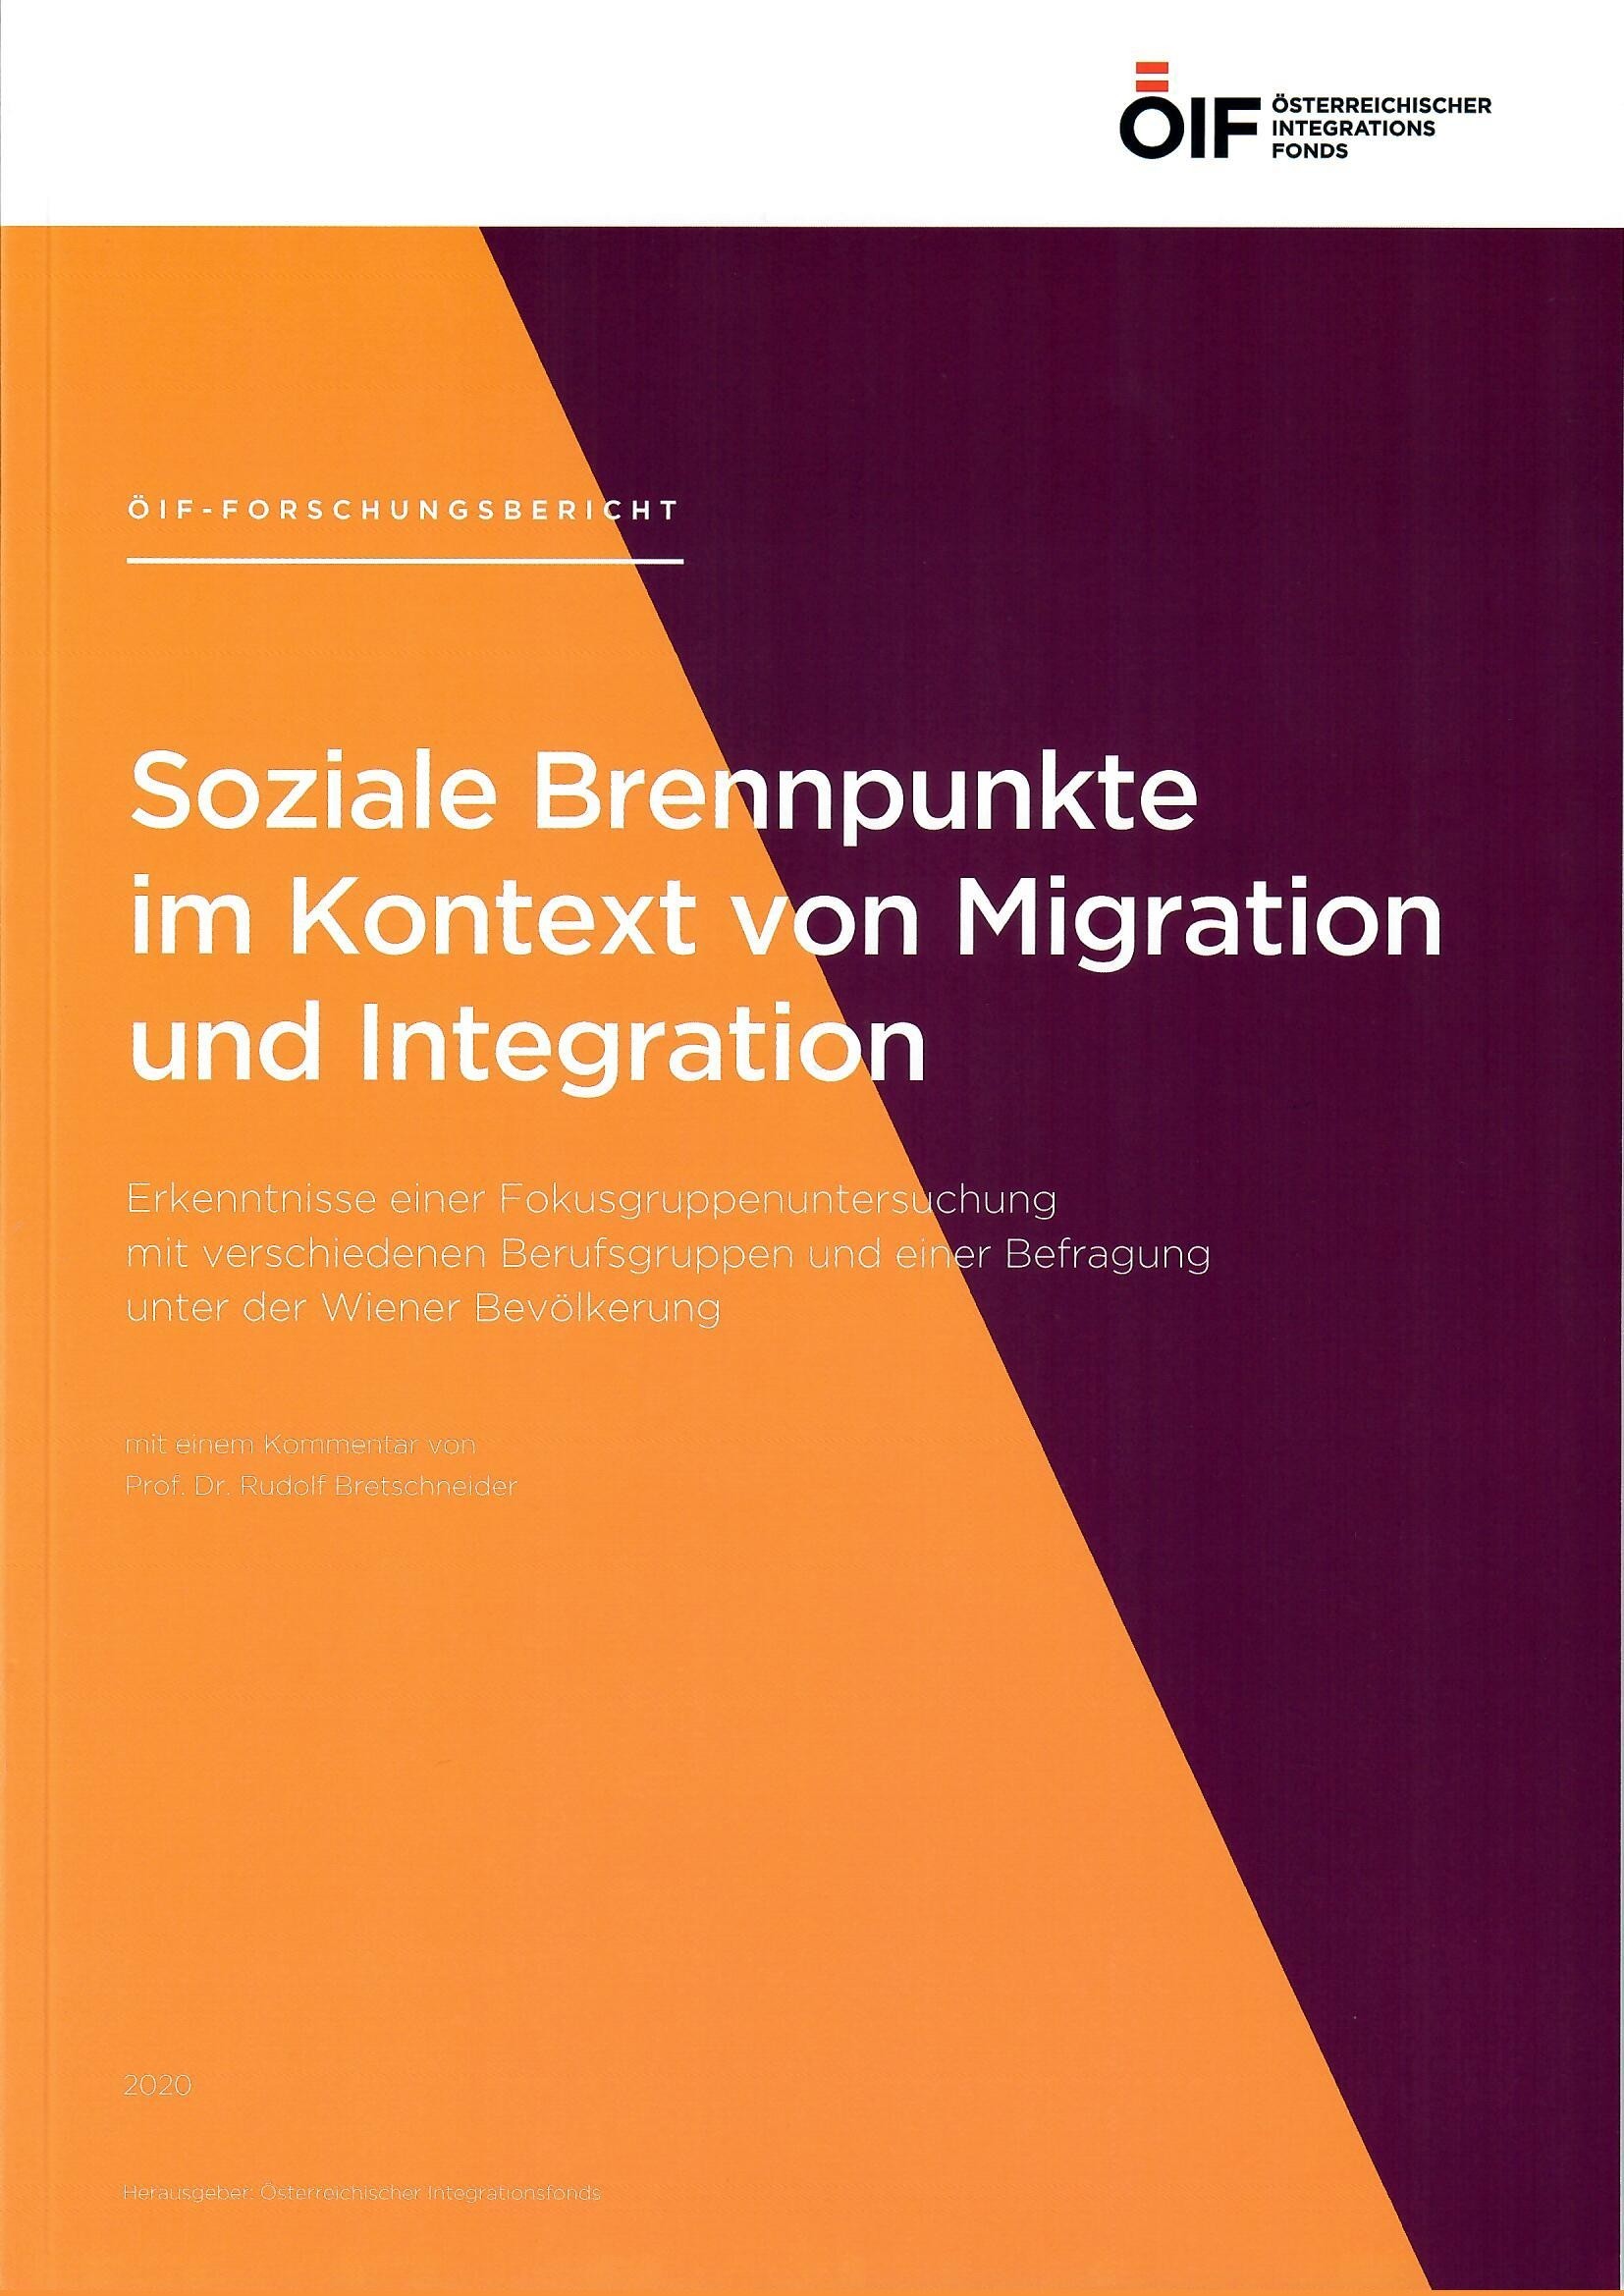 Forschungsbericht  soziale Brennpunkte im Kontext von Migration und Integration